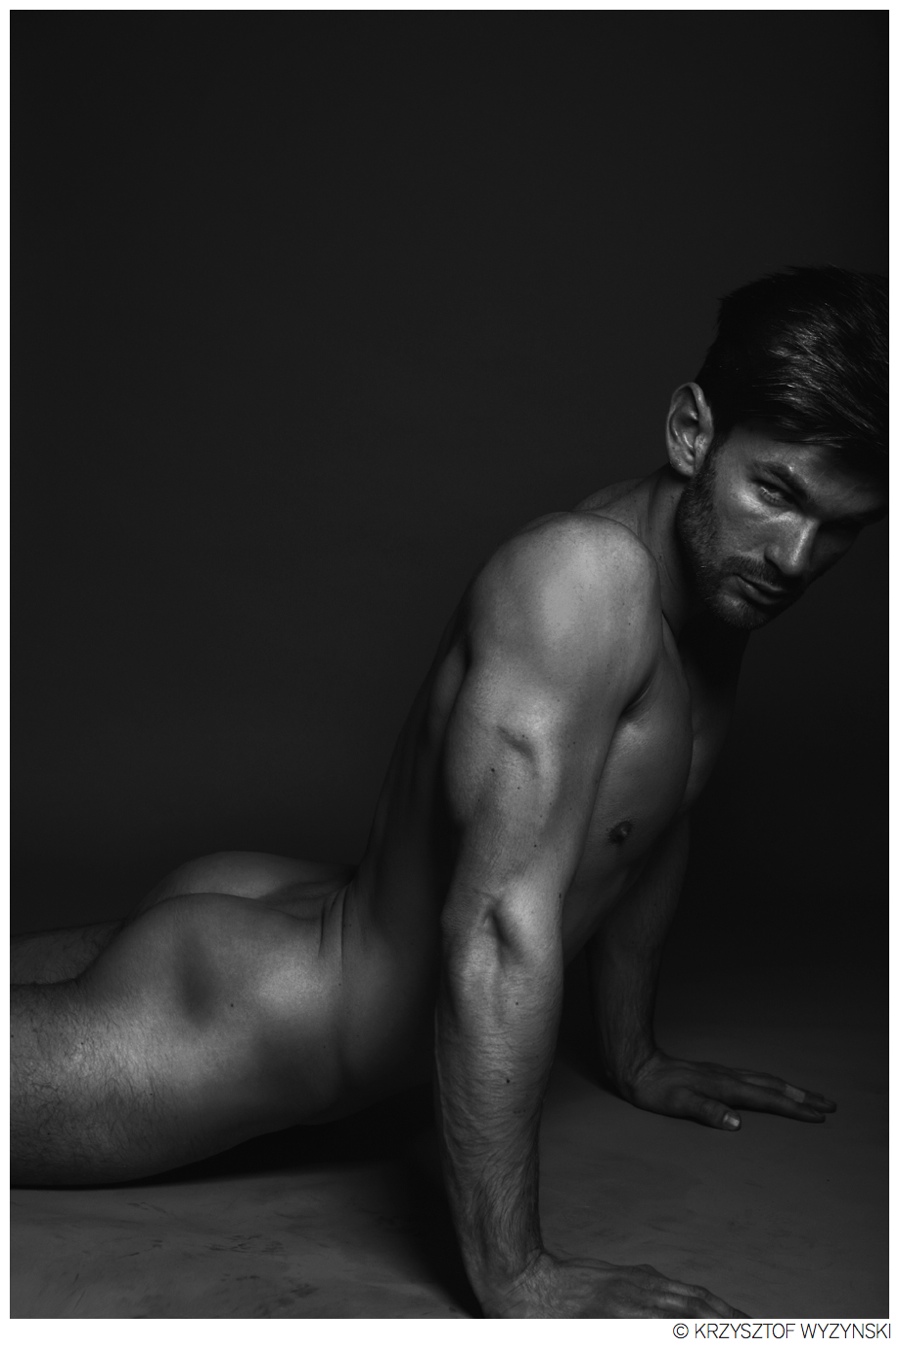 Mariusz Rusin Goes Nude for Photos by Krzysztof Wyzynski.